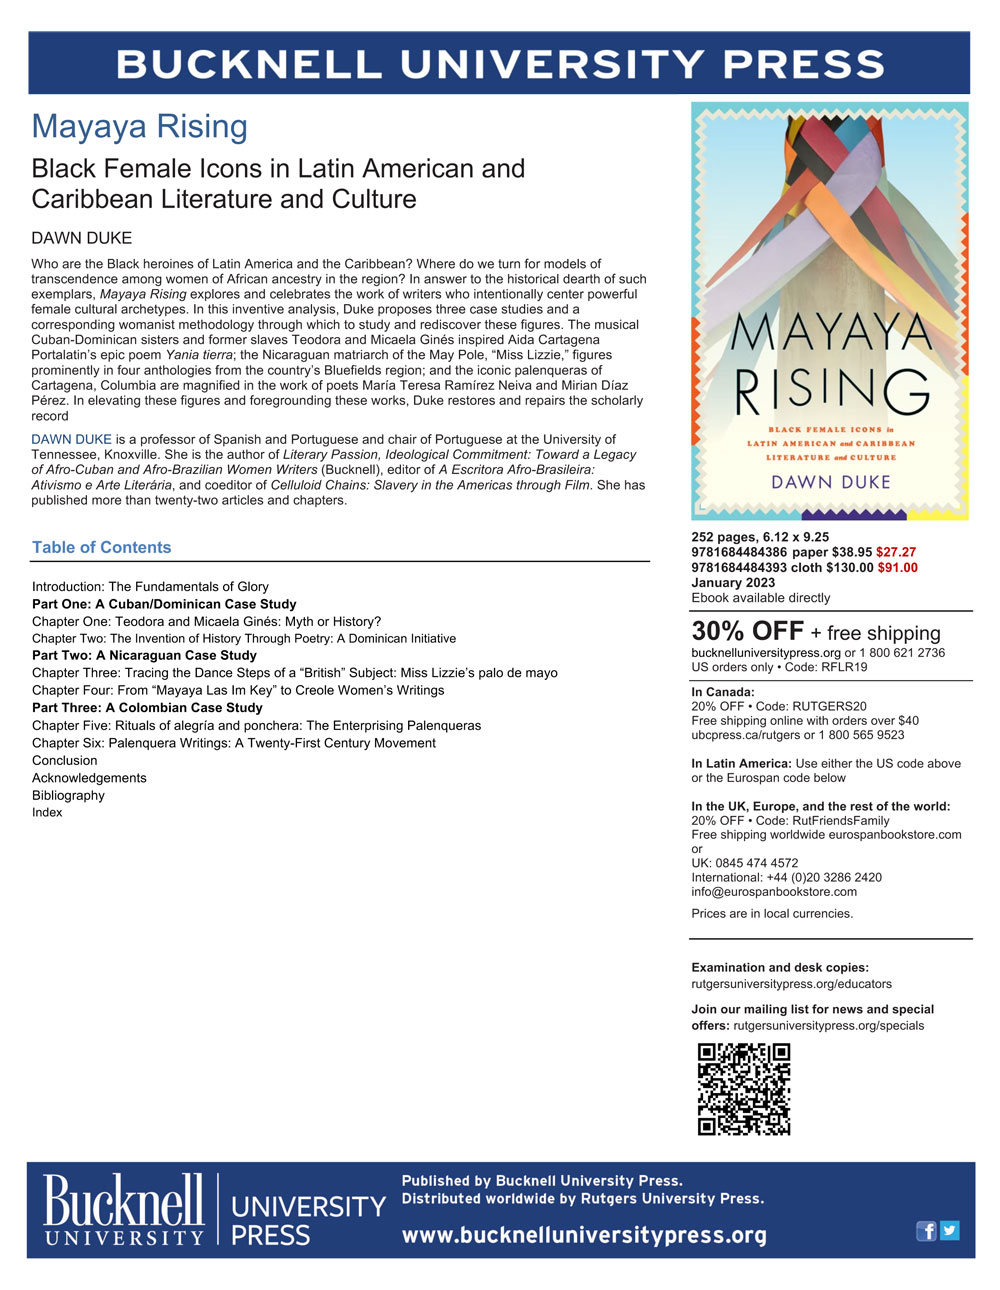 Mayaya Rising flyer